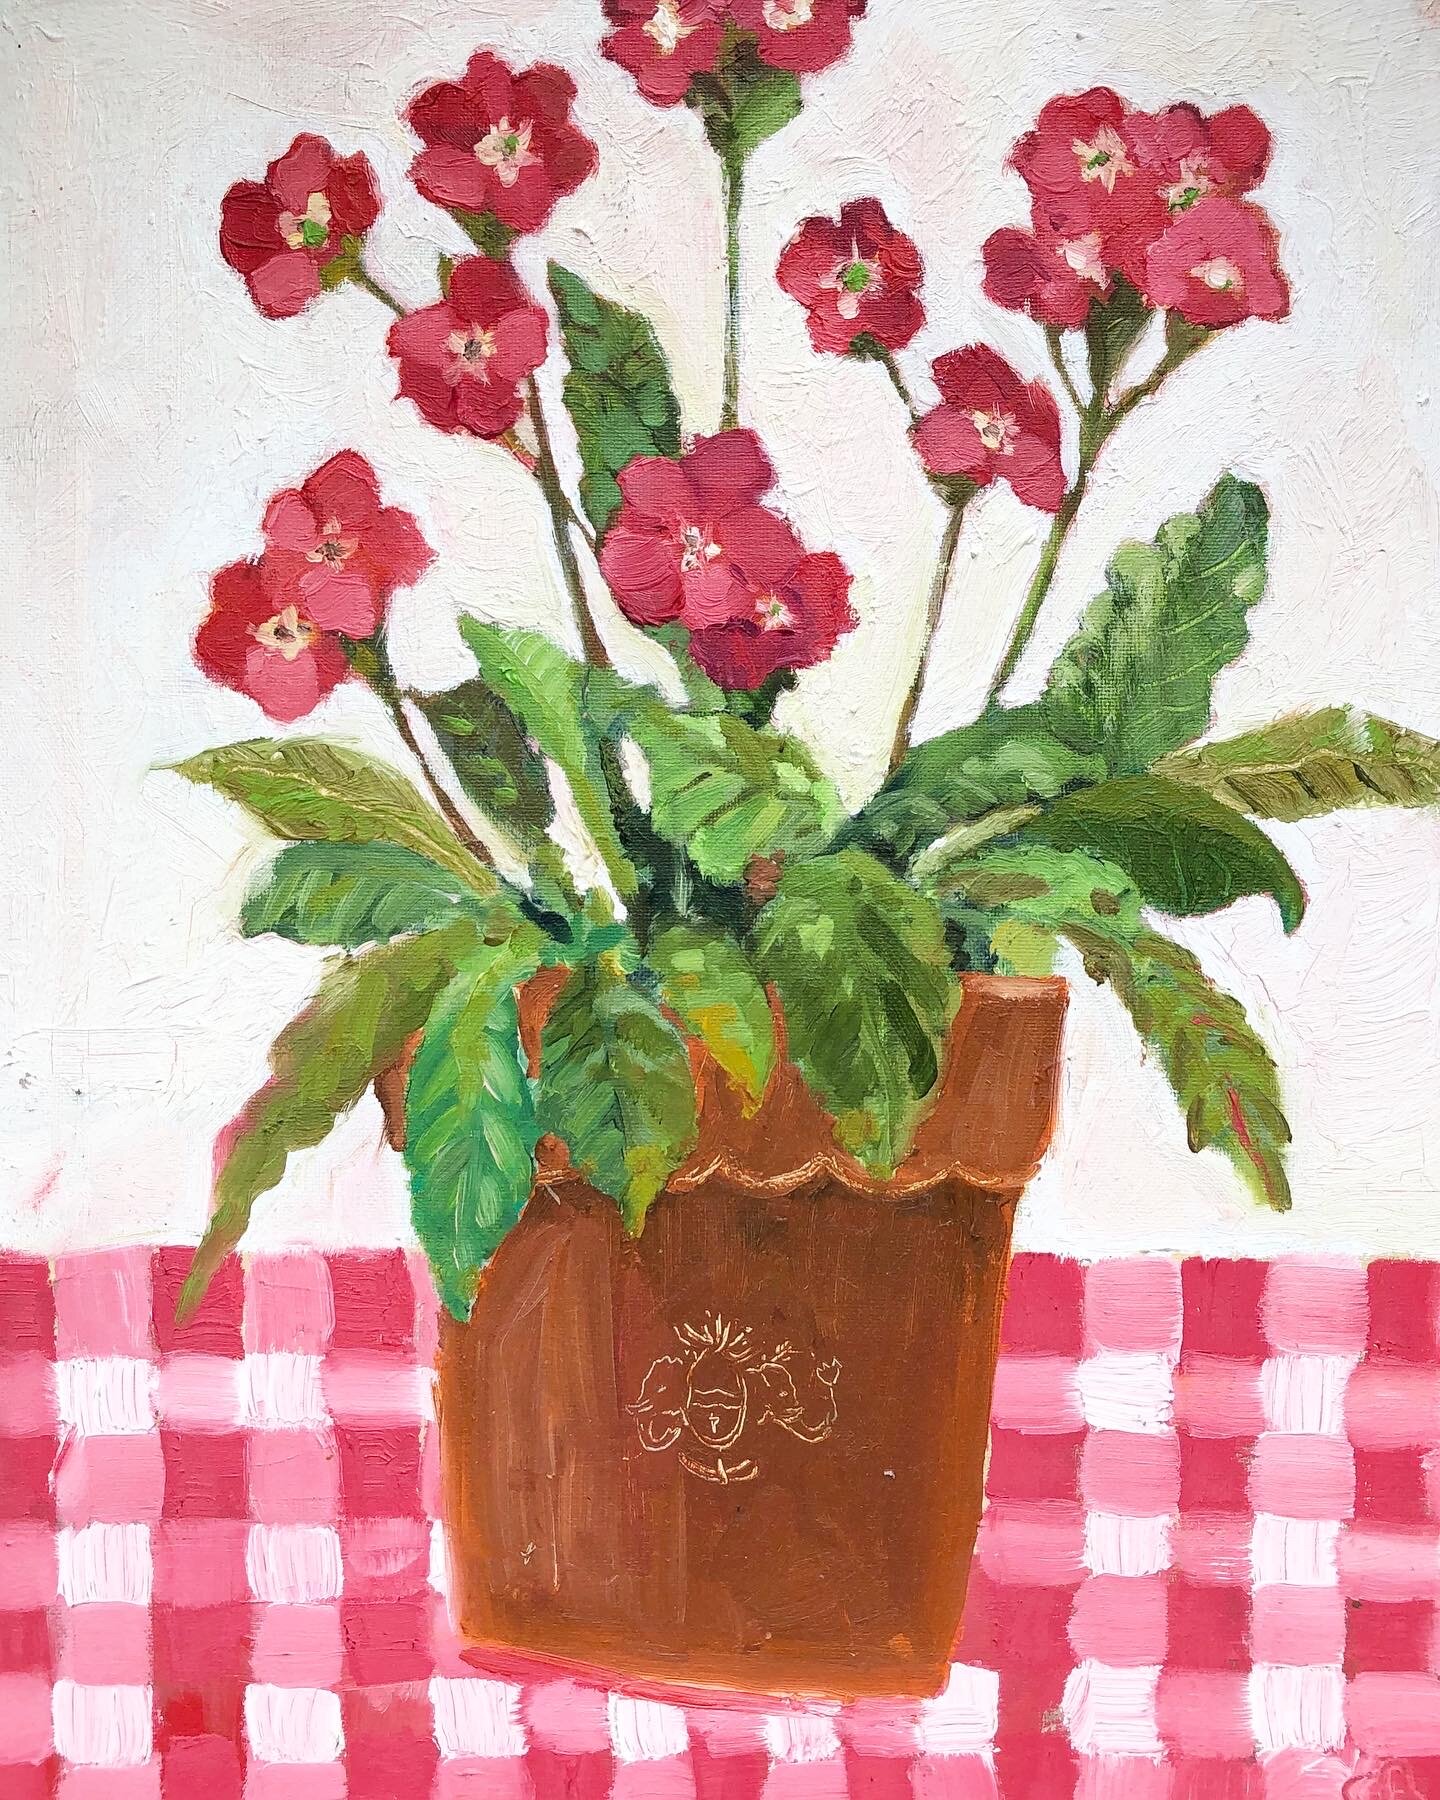 Flowers in Petersham pot. Oil on board, 30 x 24cm. Sold